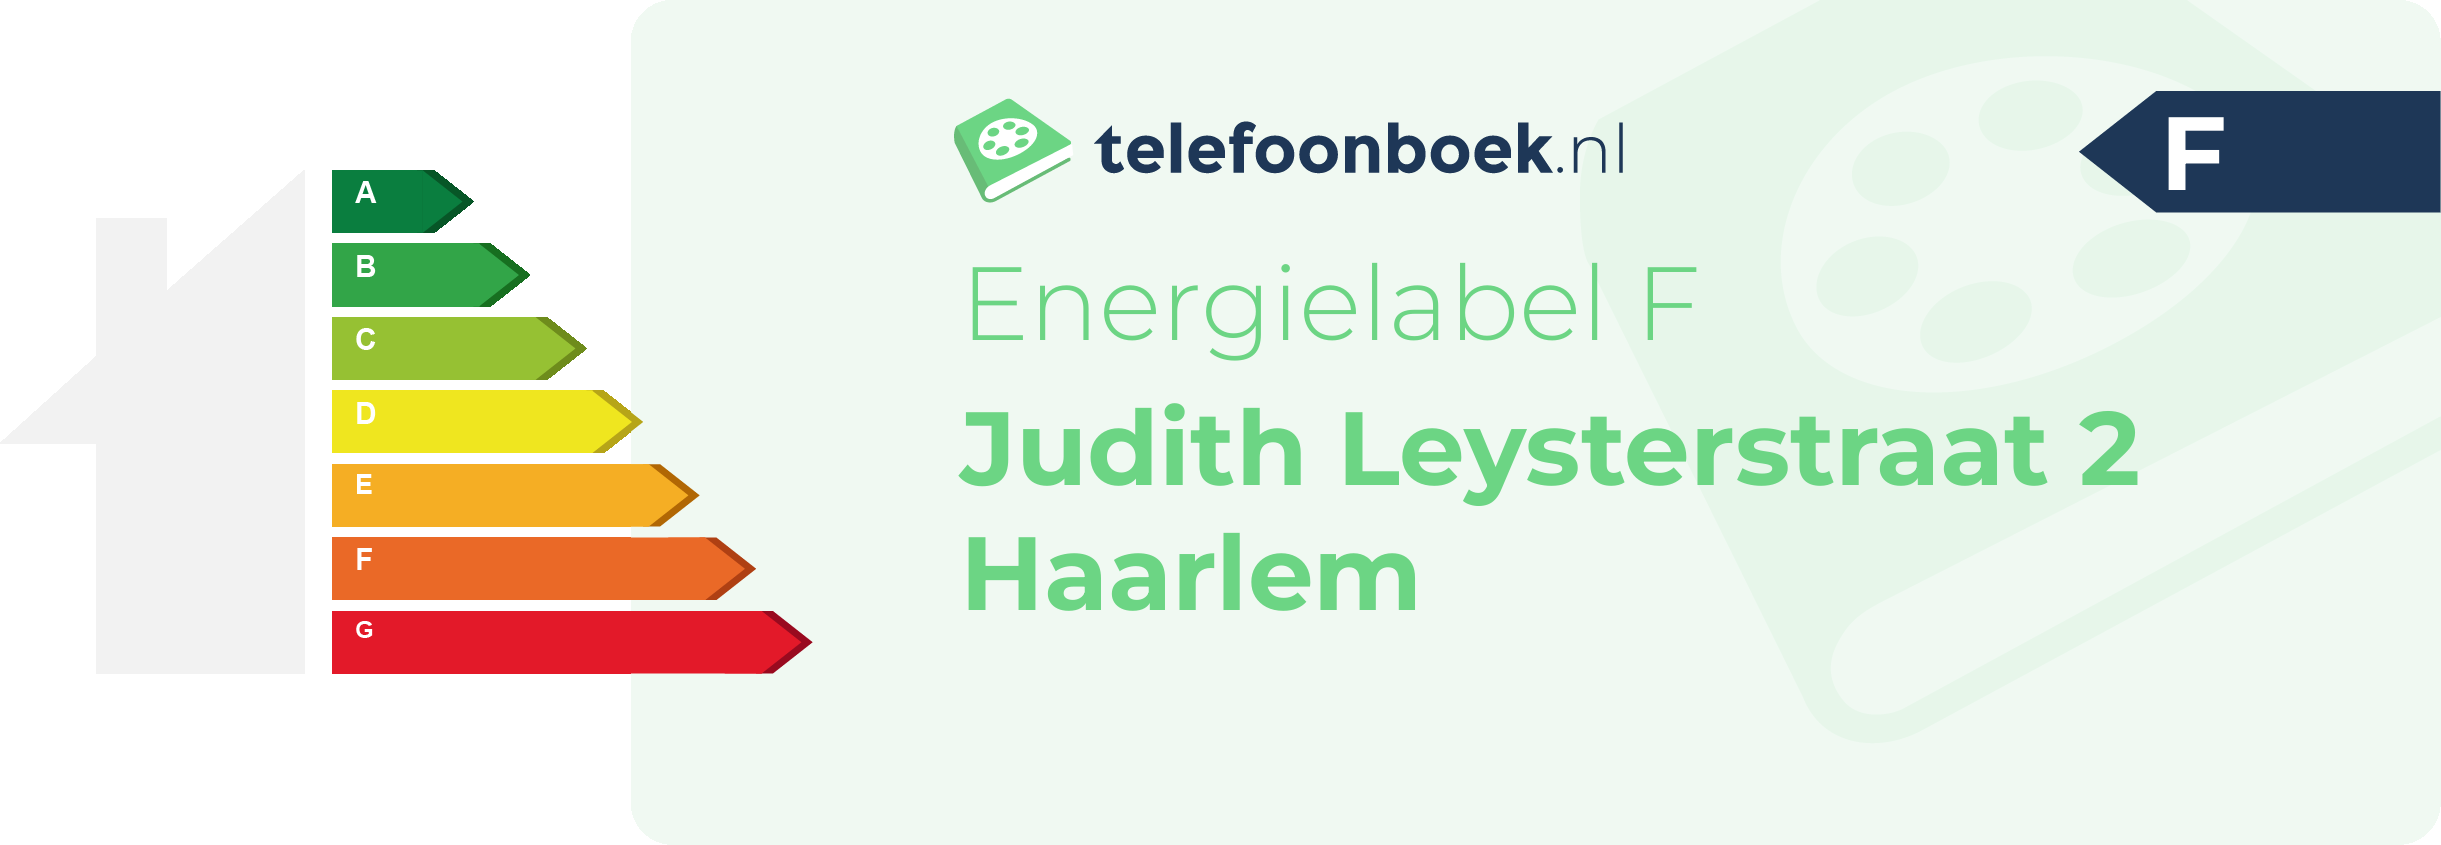 Energielabel Judith Leysterstraat 2 Haarlem